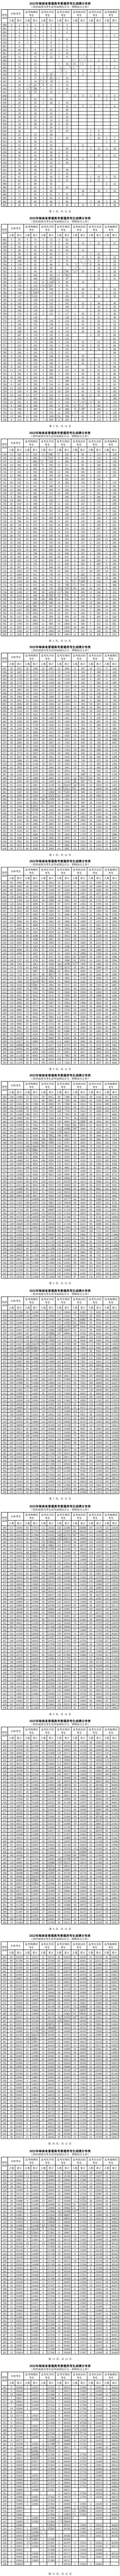 2022年海南省普通高考普通类考生成绩分布表